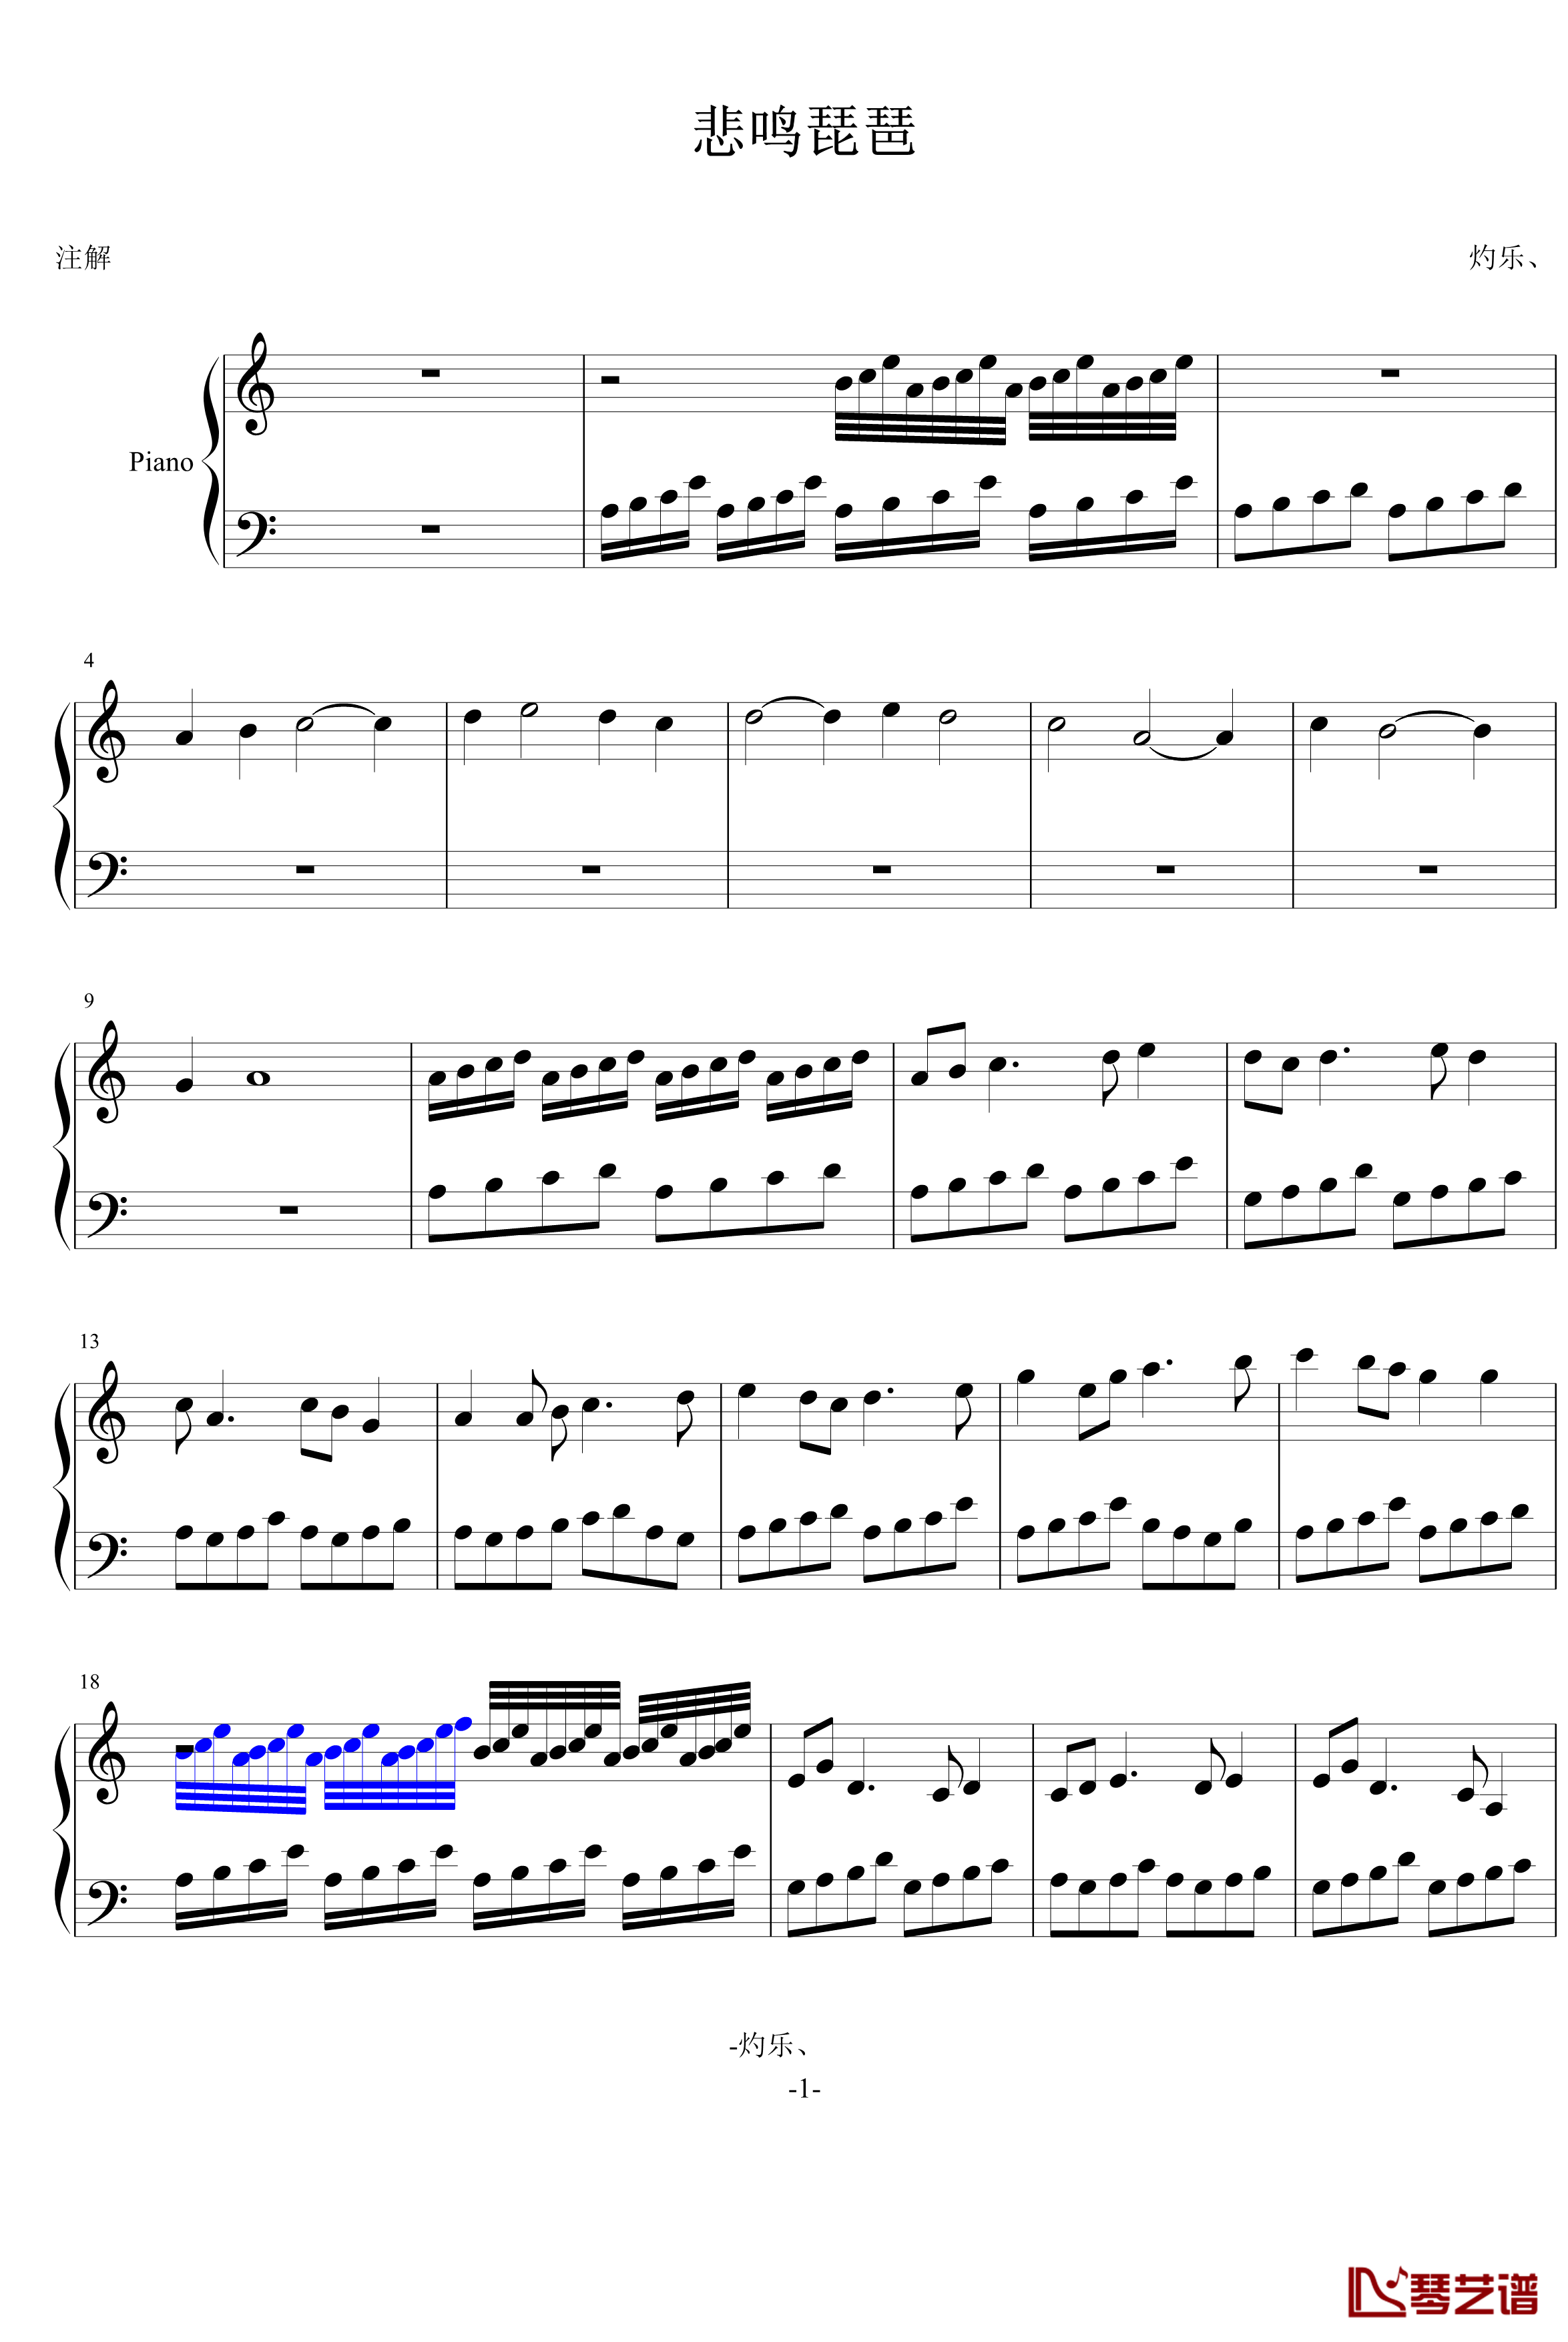 悲鸣琵琶钢琴谱-灼乐-NO.1